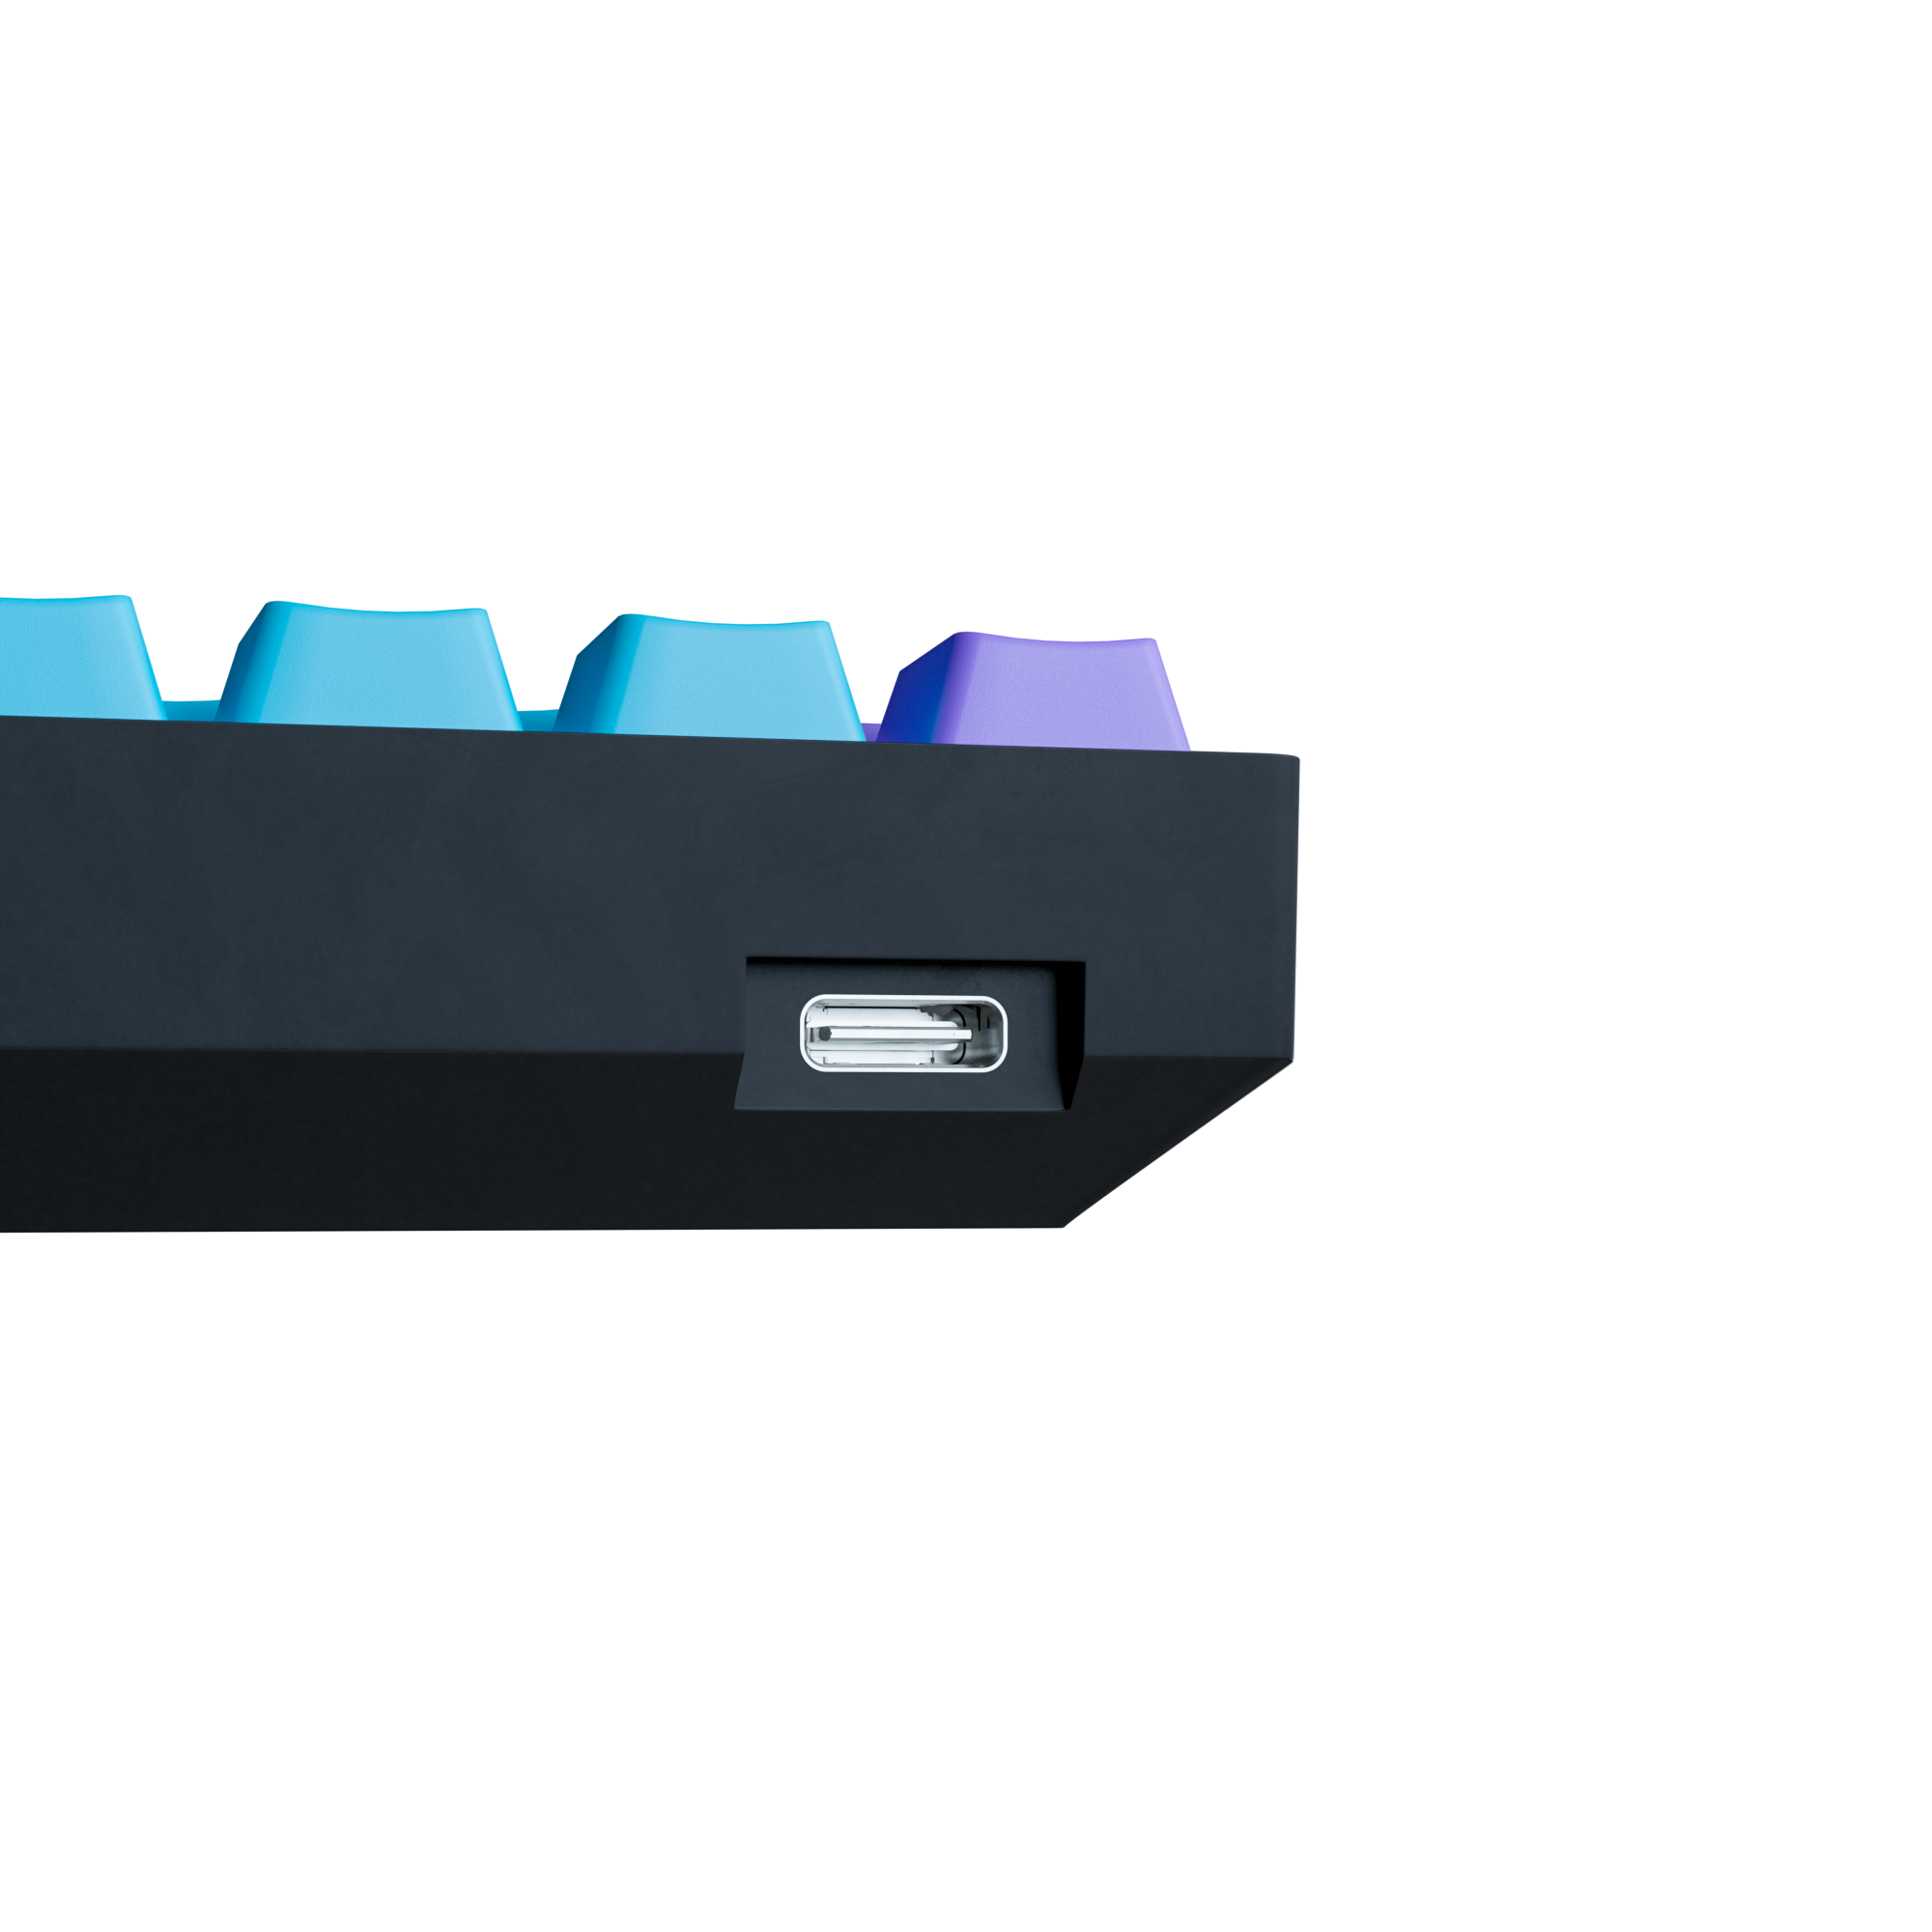 Purple Cloud EDITION - Kraken Pro 60% Mechanical Keyboard